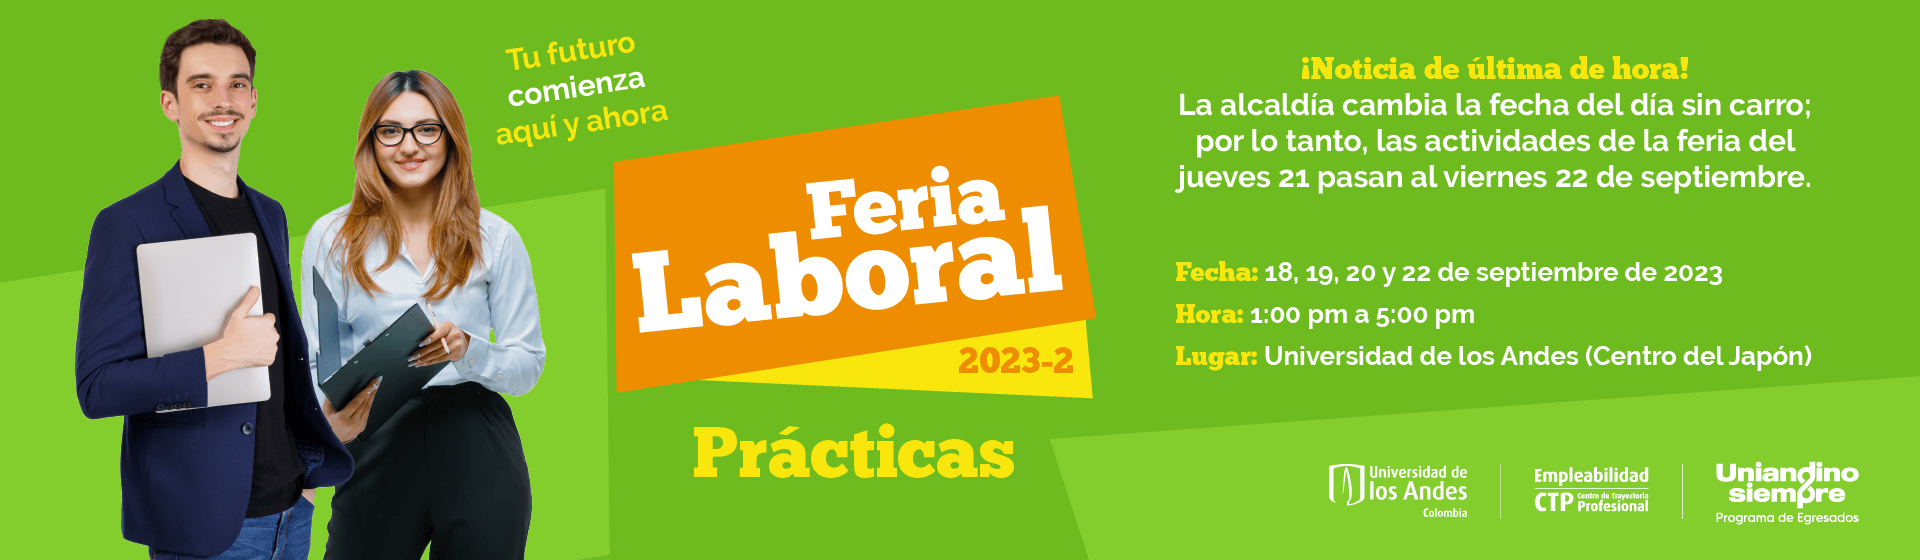 Feria Laboral - Prácticas 2023-2